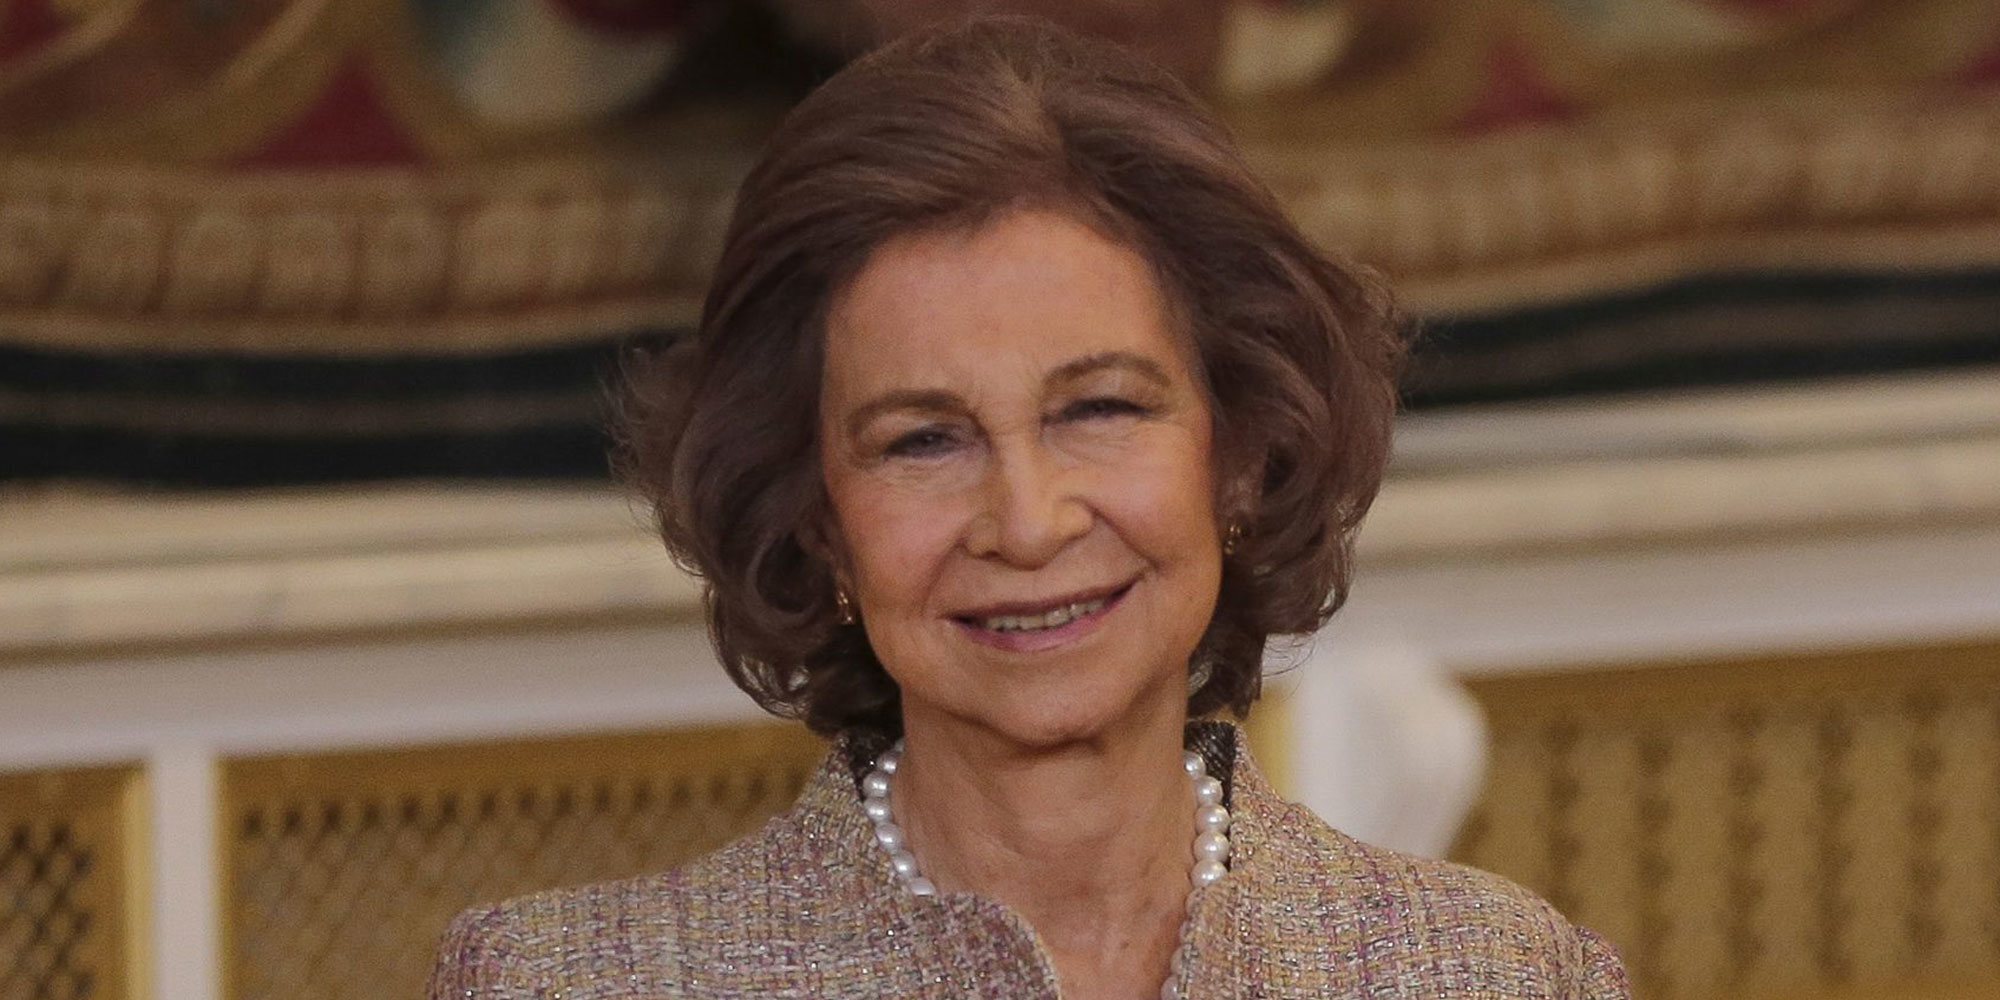 La Reina Sofía elige otro destino marcado por la familia tras su viaje a Grecia